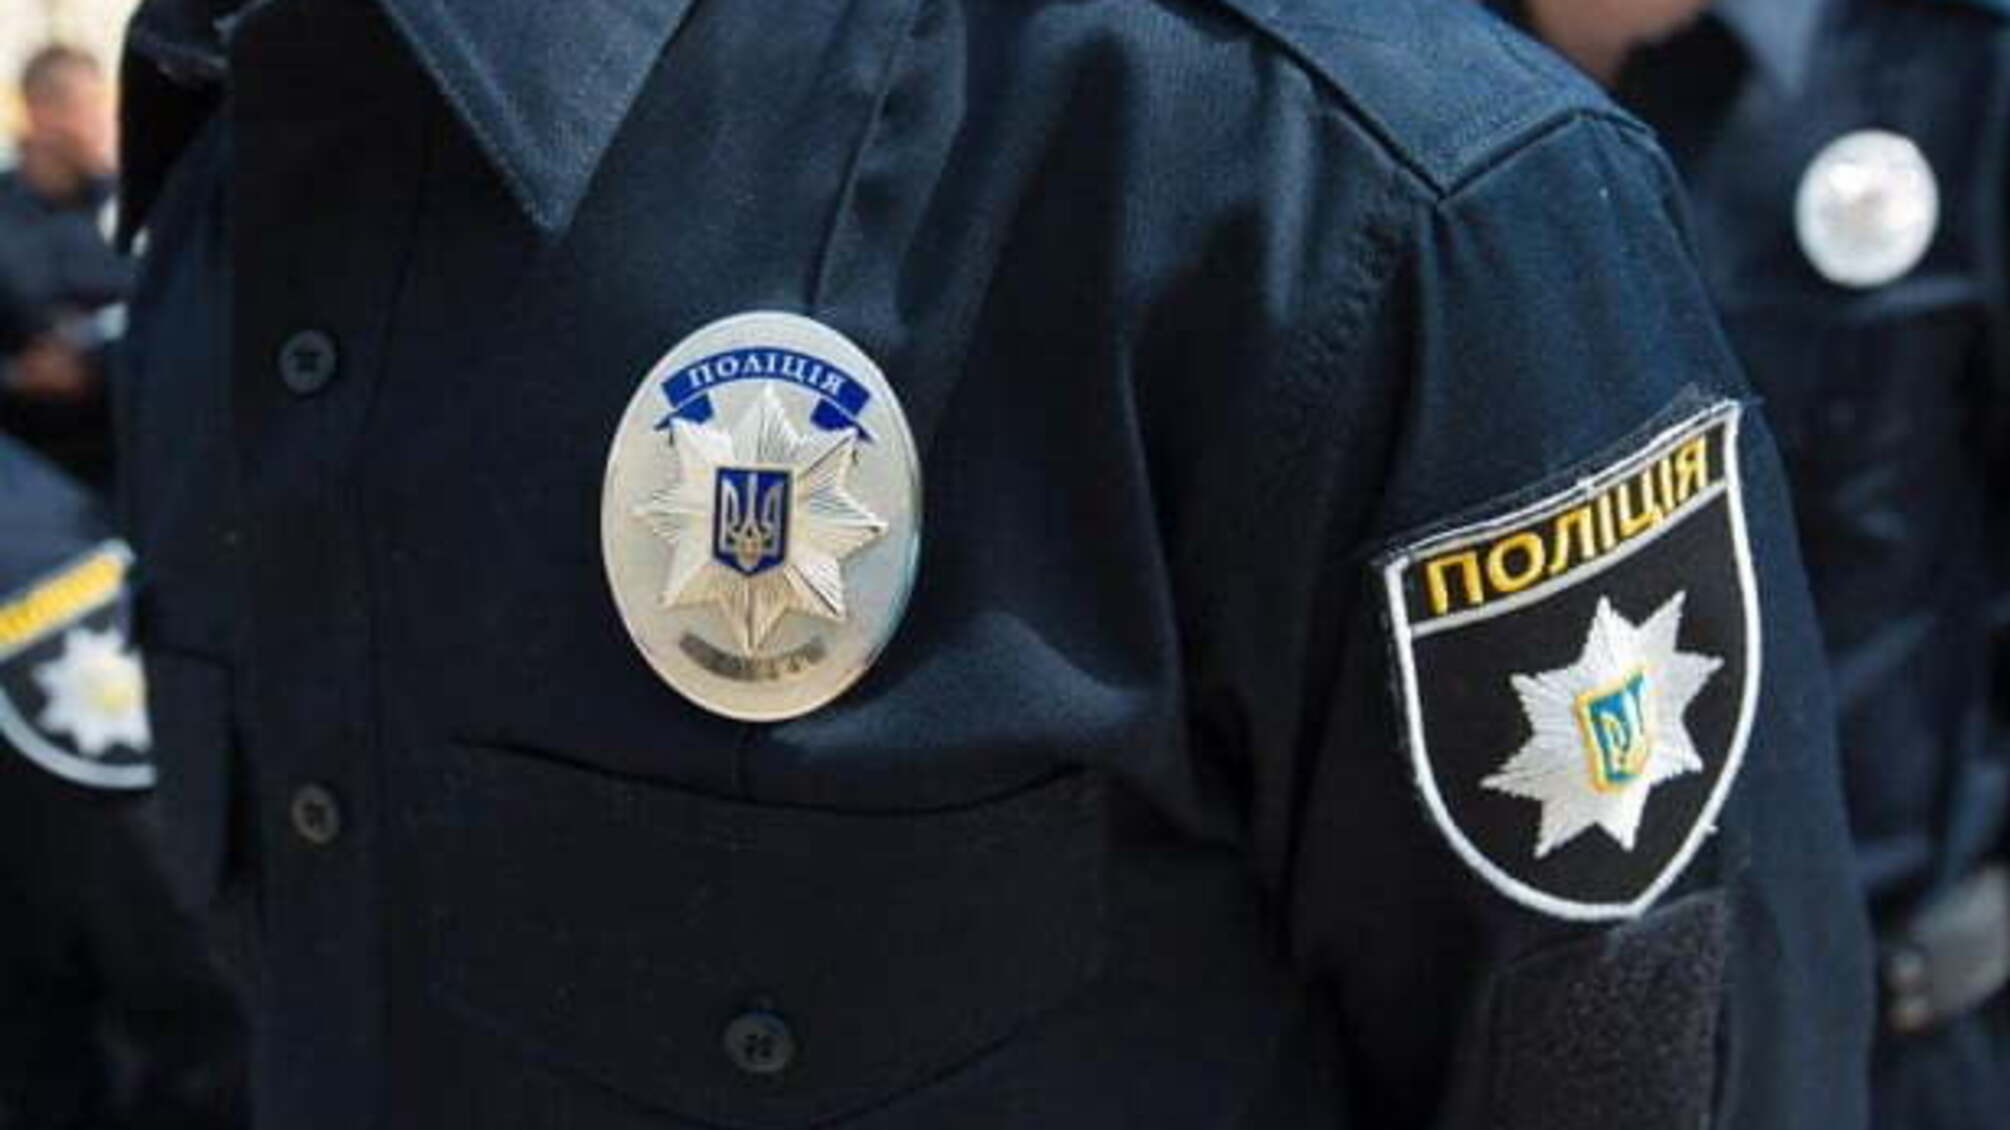 Переатестований поліцейський і розпорядник суду попалися на хабарі у Миколаєві